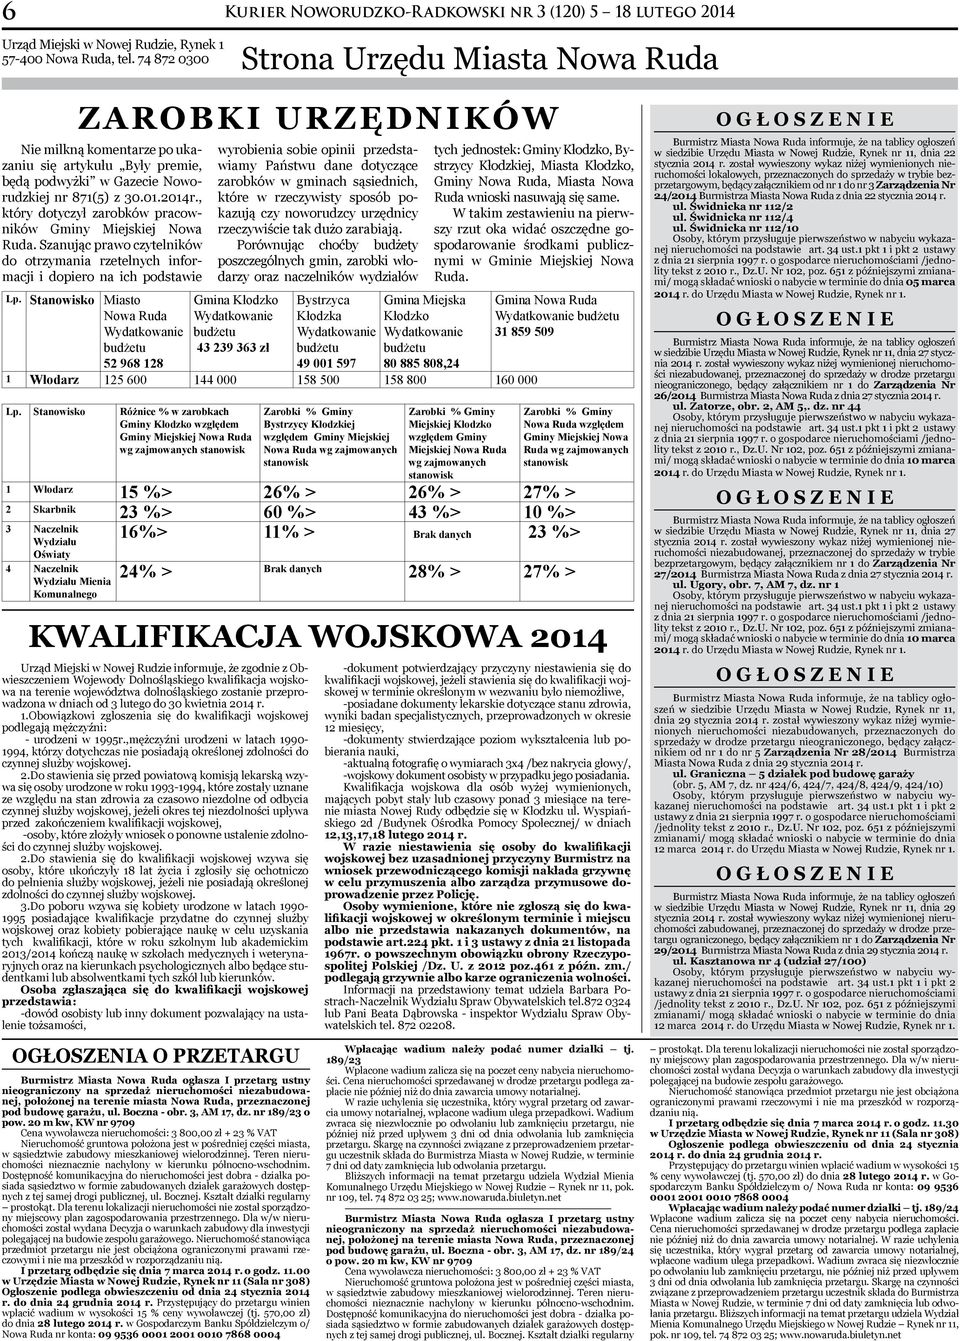 Gazecie Noworudzkiej nr 871(5) z 30.01.2014r., który dotyczył zarobków pracowników Gminy Miejskiej Nowa Ruda.